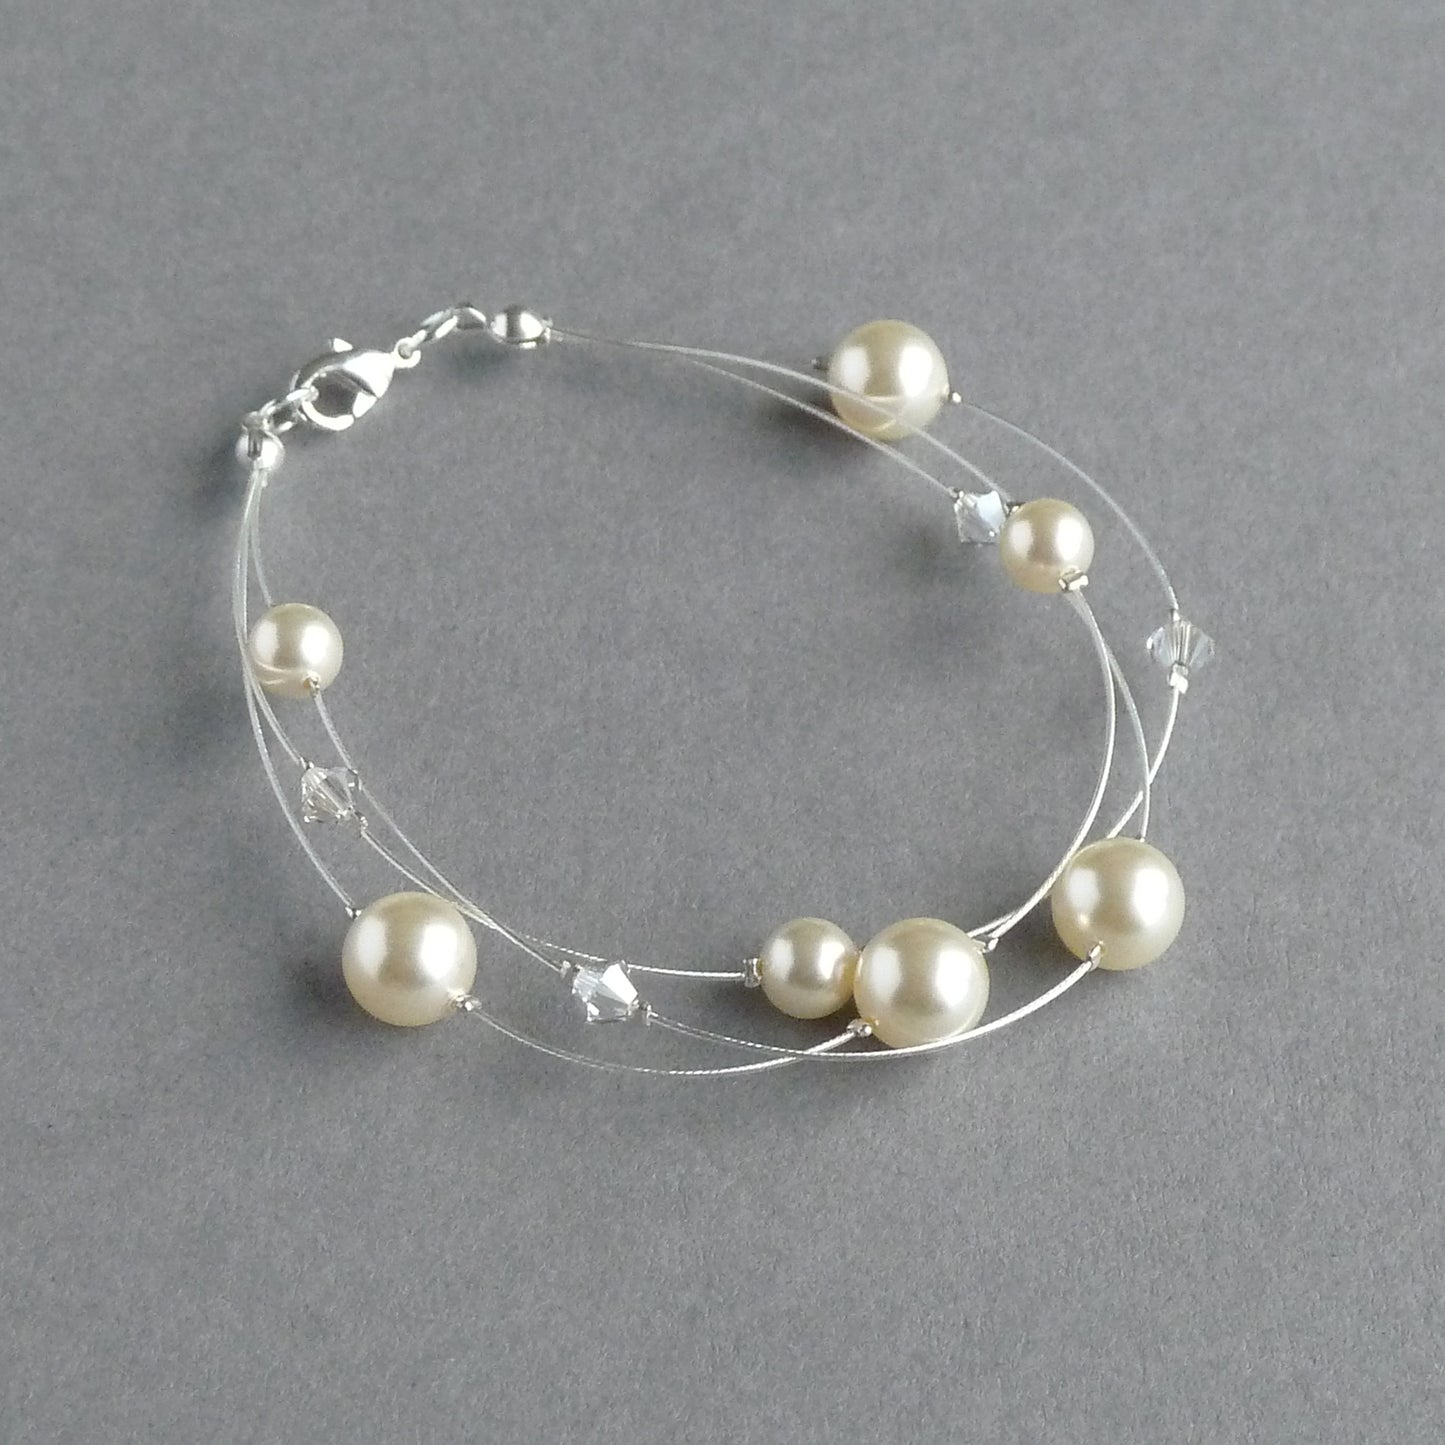 Cream floating pearl bracelet for women